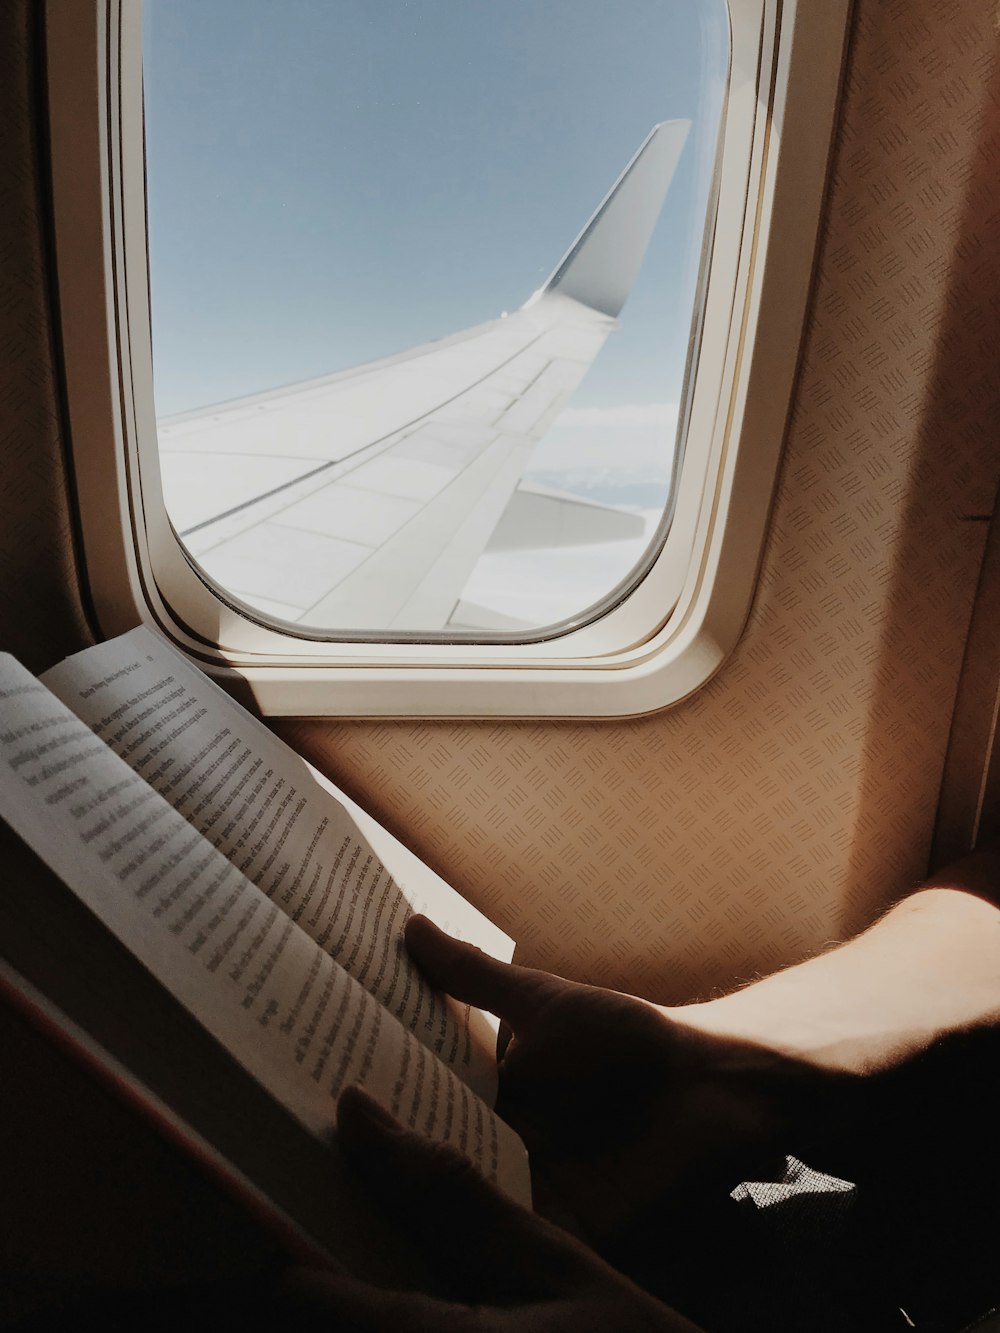 personne lisant un livre à côté de la fenêtre de l’avion